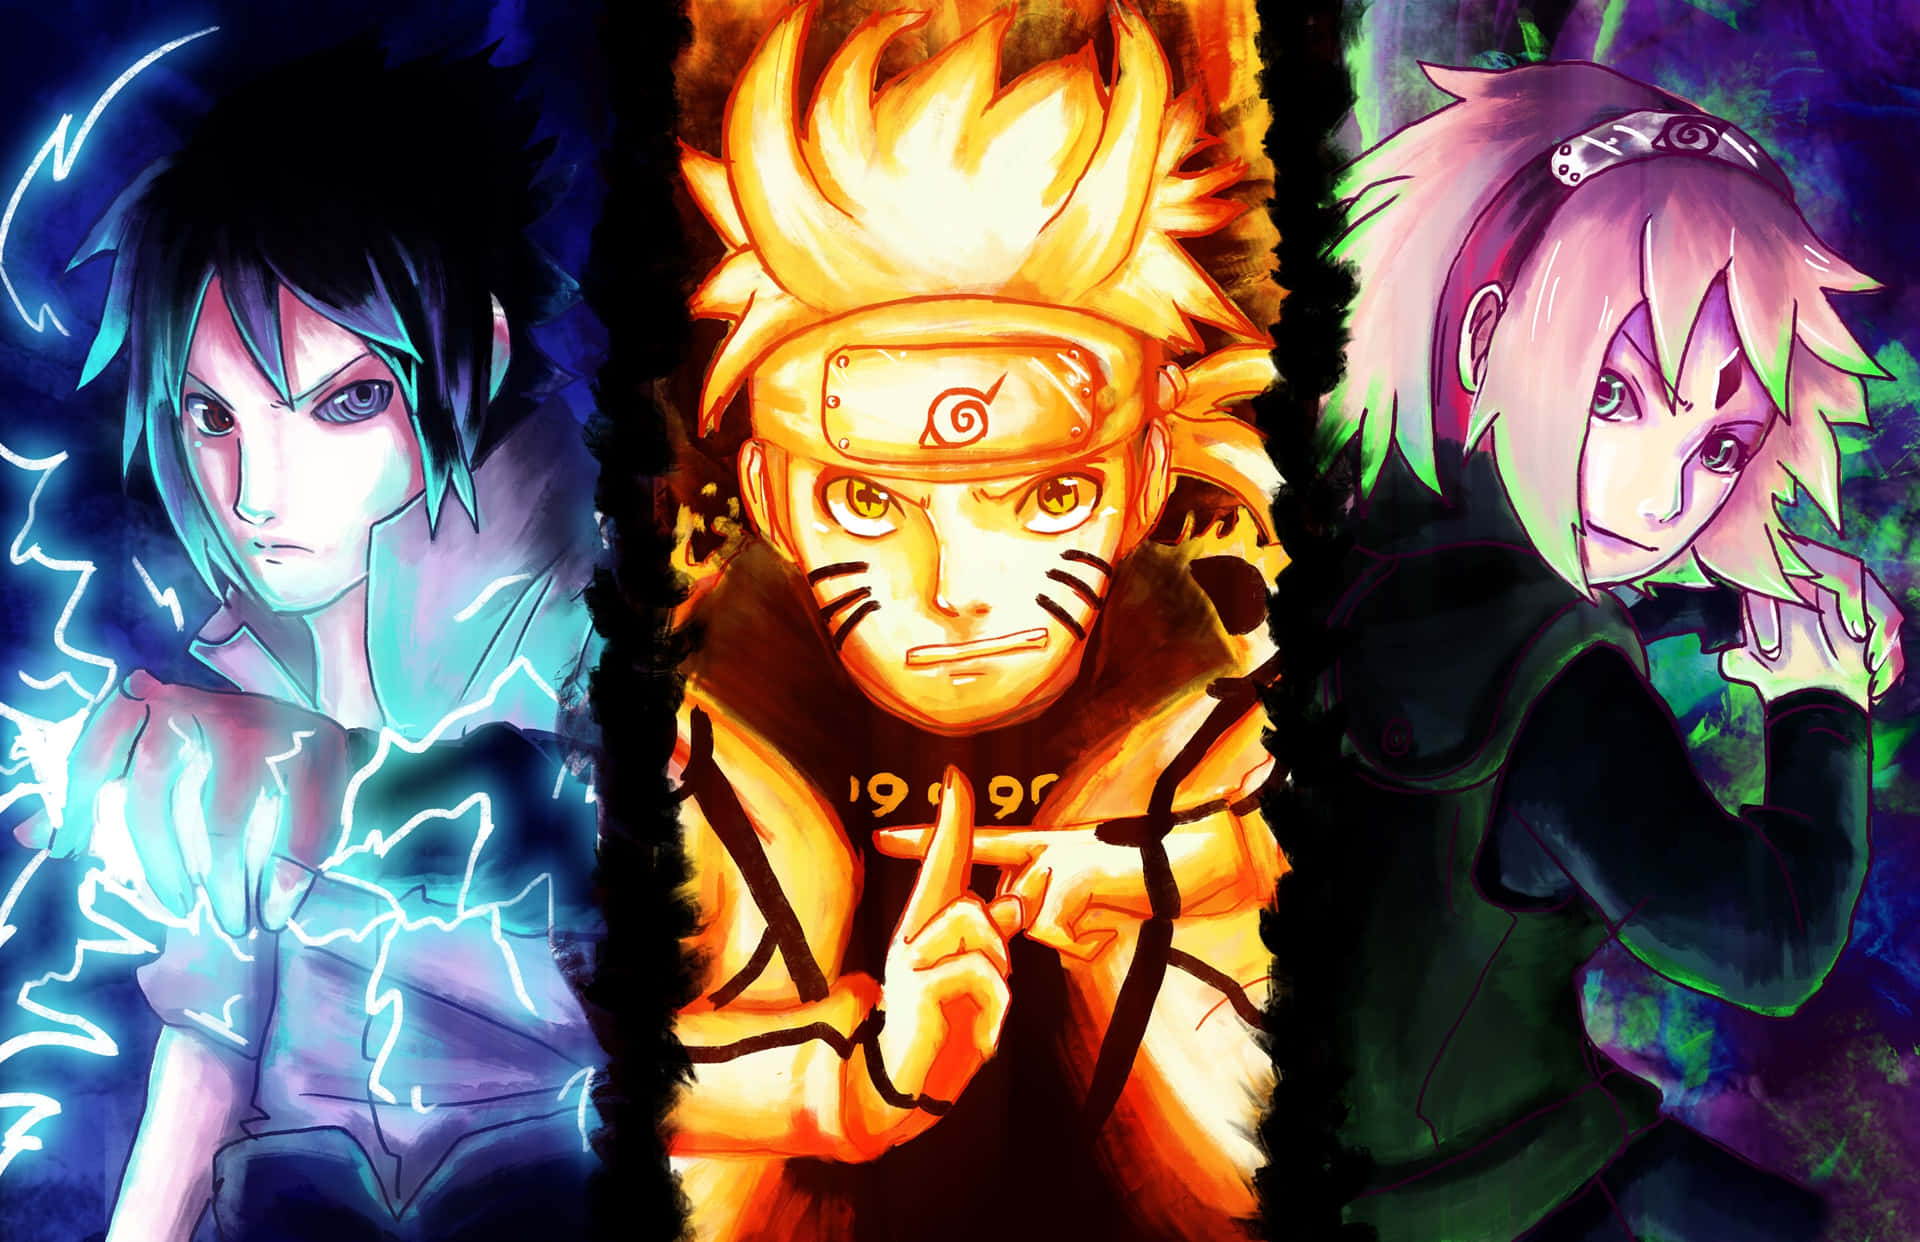 Tải xuống hình nền Naruto của Team 7 để trang trí cho điện thoại hoặc máy tính của bạn! Cảm nhận sự mạnh mẽ và khát khao phiêu lưu của Naruto, Sasuke và Sakura khi họ lập thành công đội để cùng nhau chiến đấu. Hãy truy cập và tải xuống ngay bây giờ!